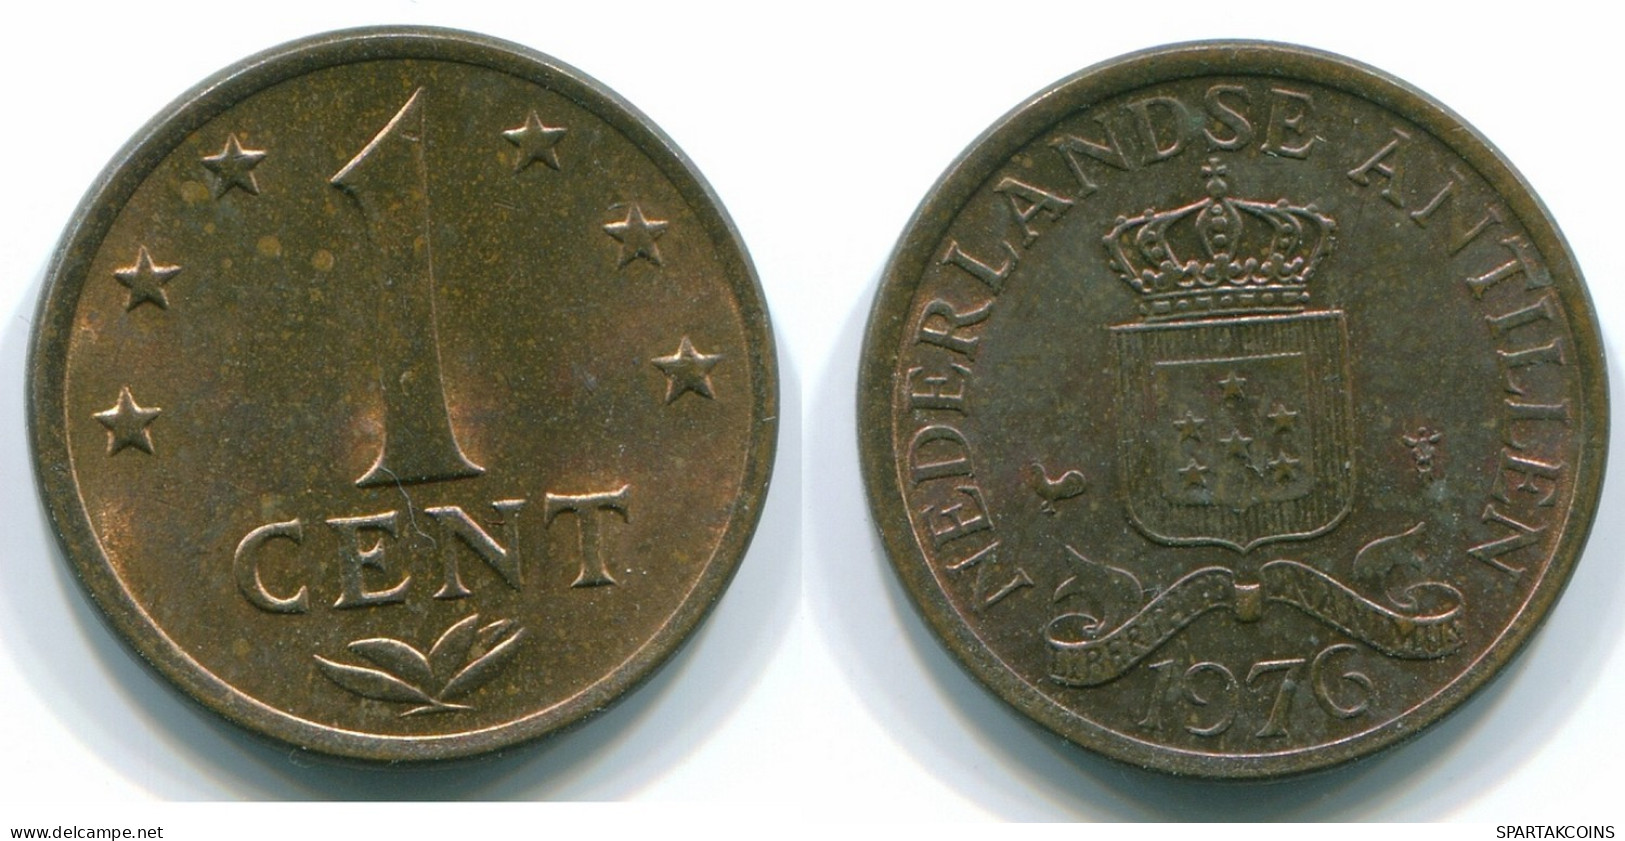 1 CENT 1976 NIEDERLÄNDISCHE ANTILLEN Bronze Koloniale Münze #S10690.D.A - Antillas Neerlandesas